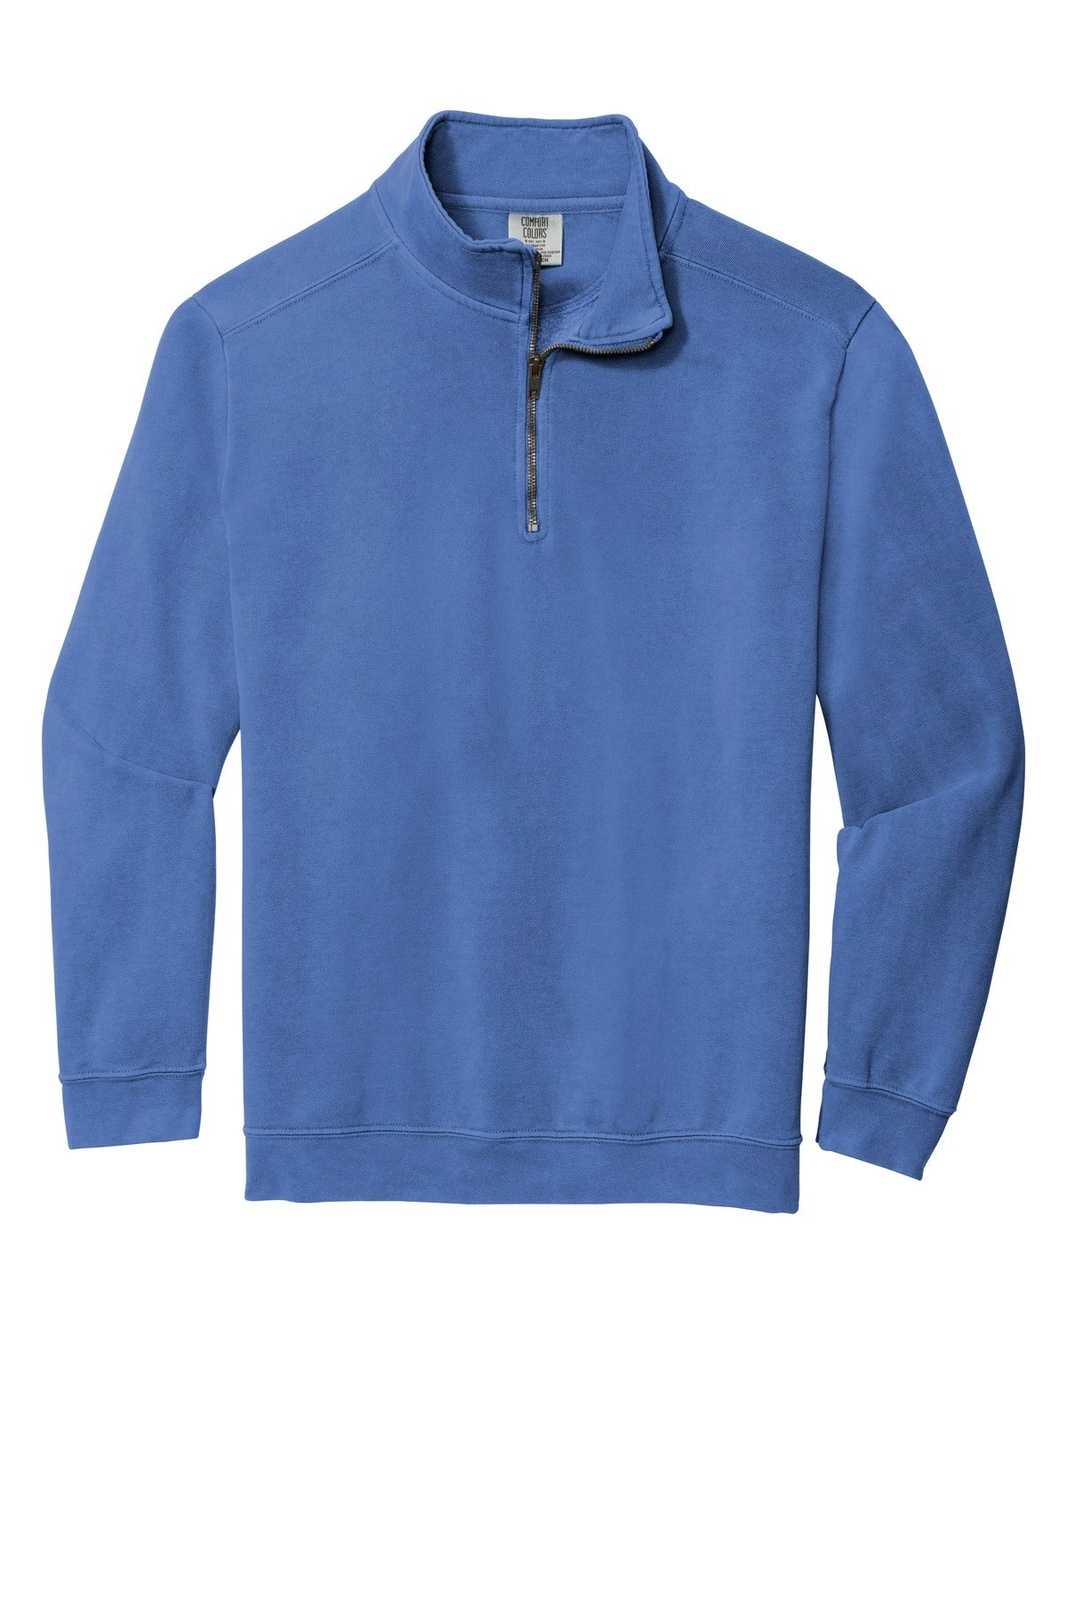 Comfort Colors 1580 Ring Spun 1/4-Zip Sweatshirt - Flo Blue - HIT a Double